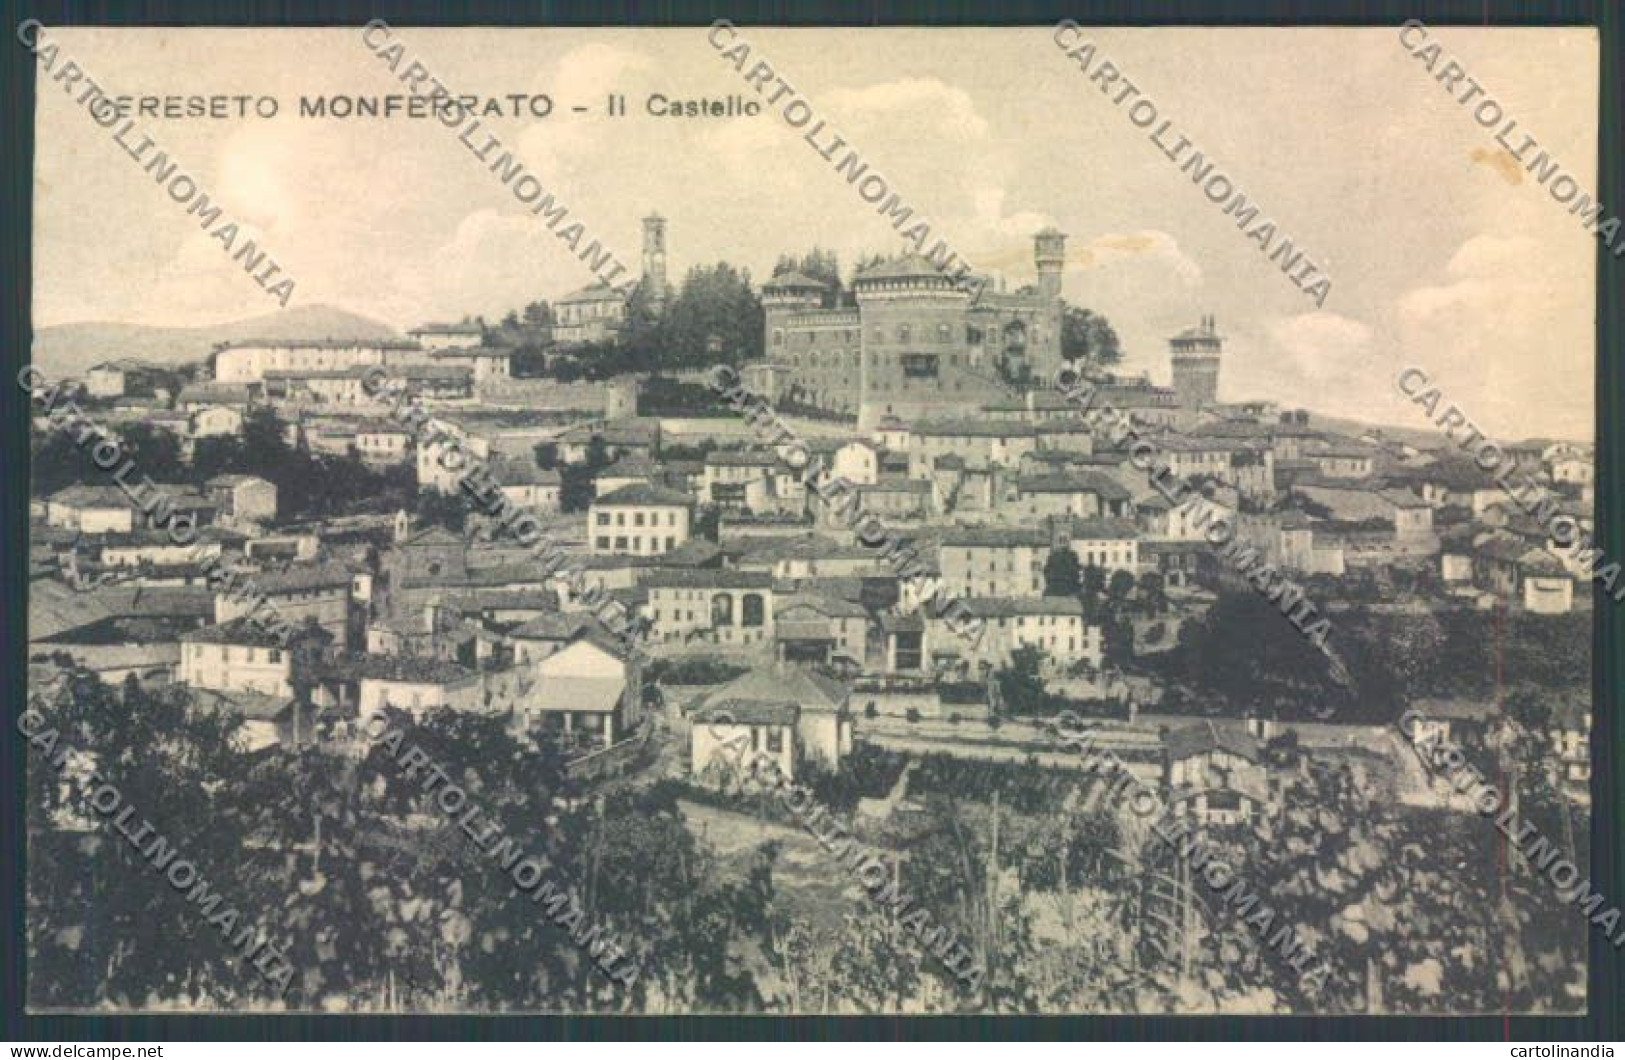 Alessandria Cereseto Monferrato Cartolina LQ0881 - Alessandria